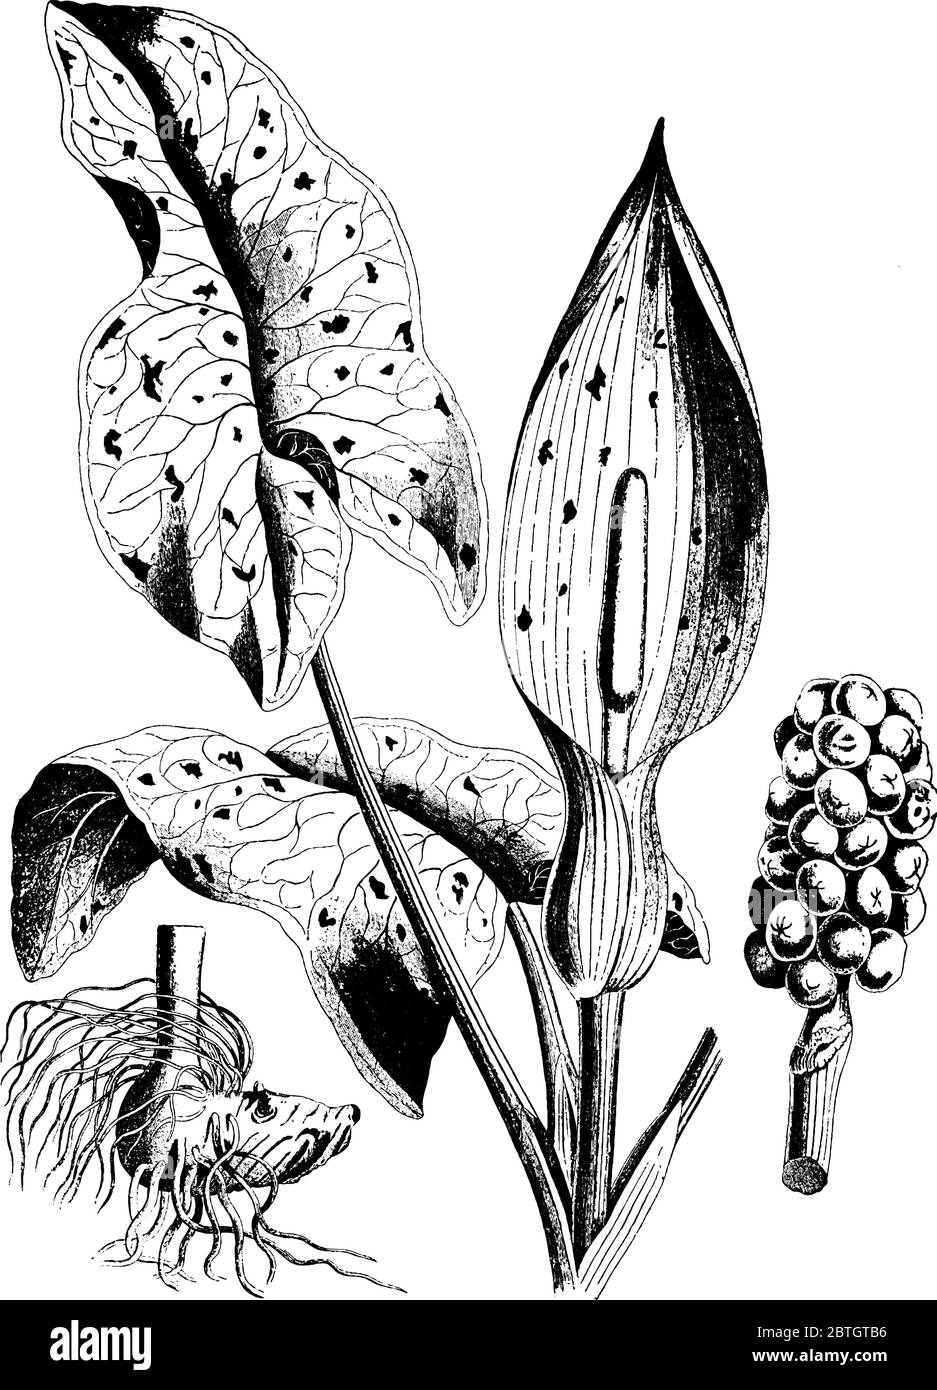 Une plante commune avec des feuilles pourpres et peut causer des réactions allergiques dans les gens, trouvé dans le nord de l'Europe tempérée, le dessin de ligne vintage ou Illustration de Vecteur